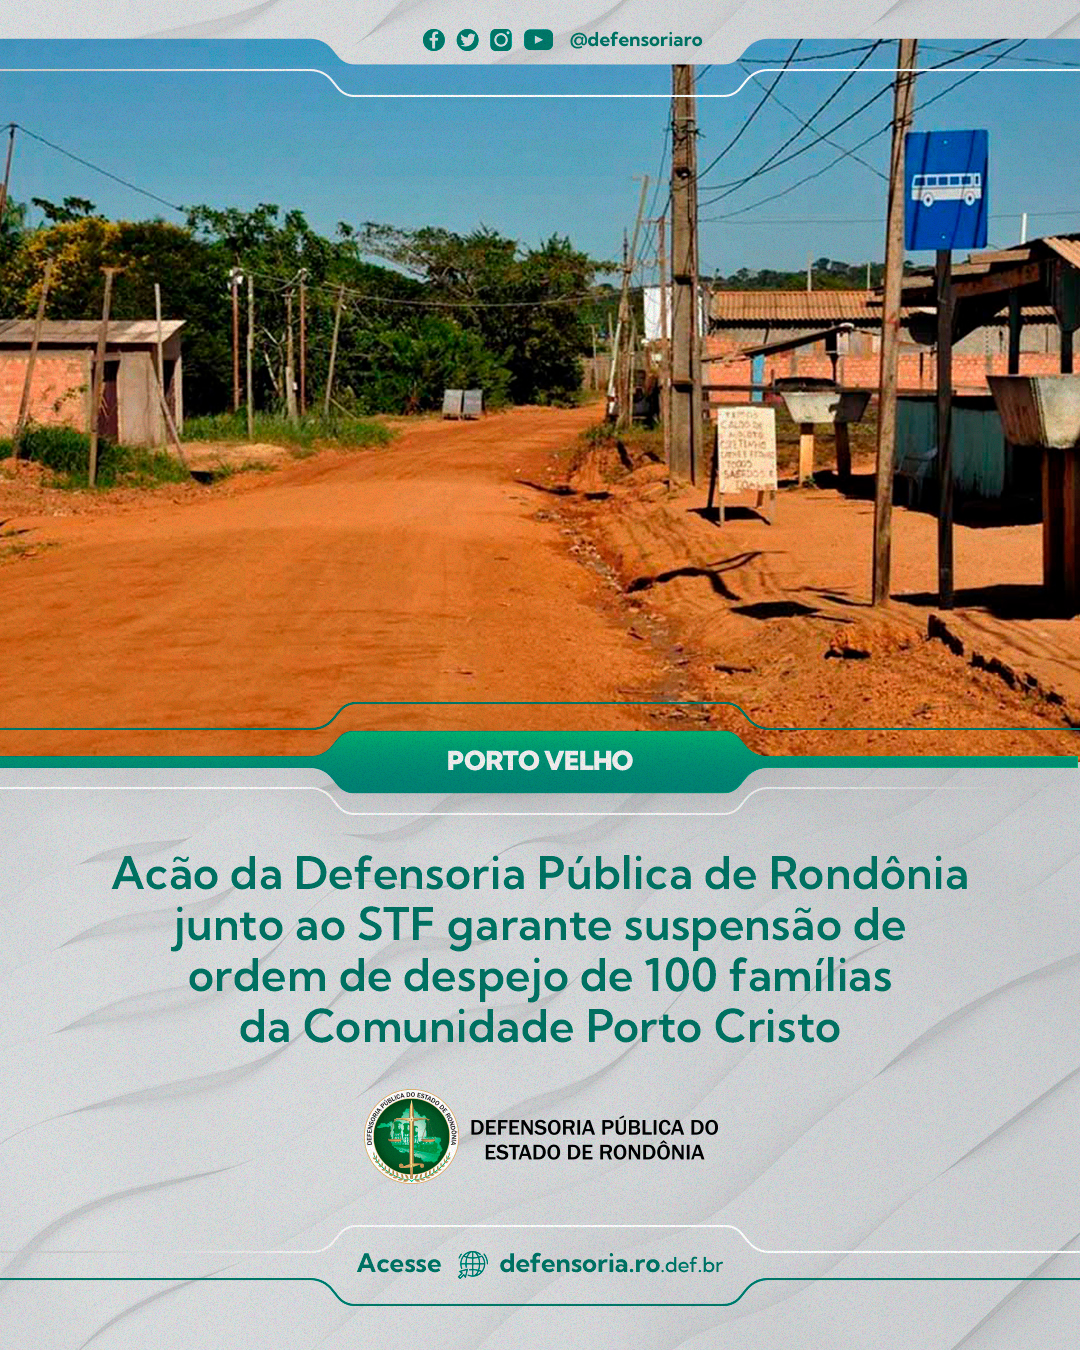 Porto Velho: Acão da Defensoria Pública de Rondônia junto ao STF garante suspensão de ordem de despejo de 100 famílias da Comunidade Porto Cristo